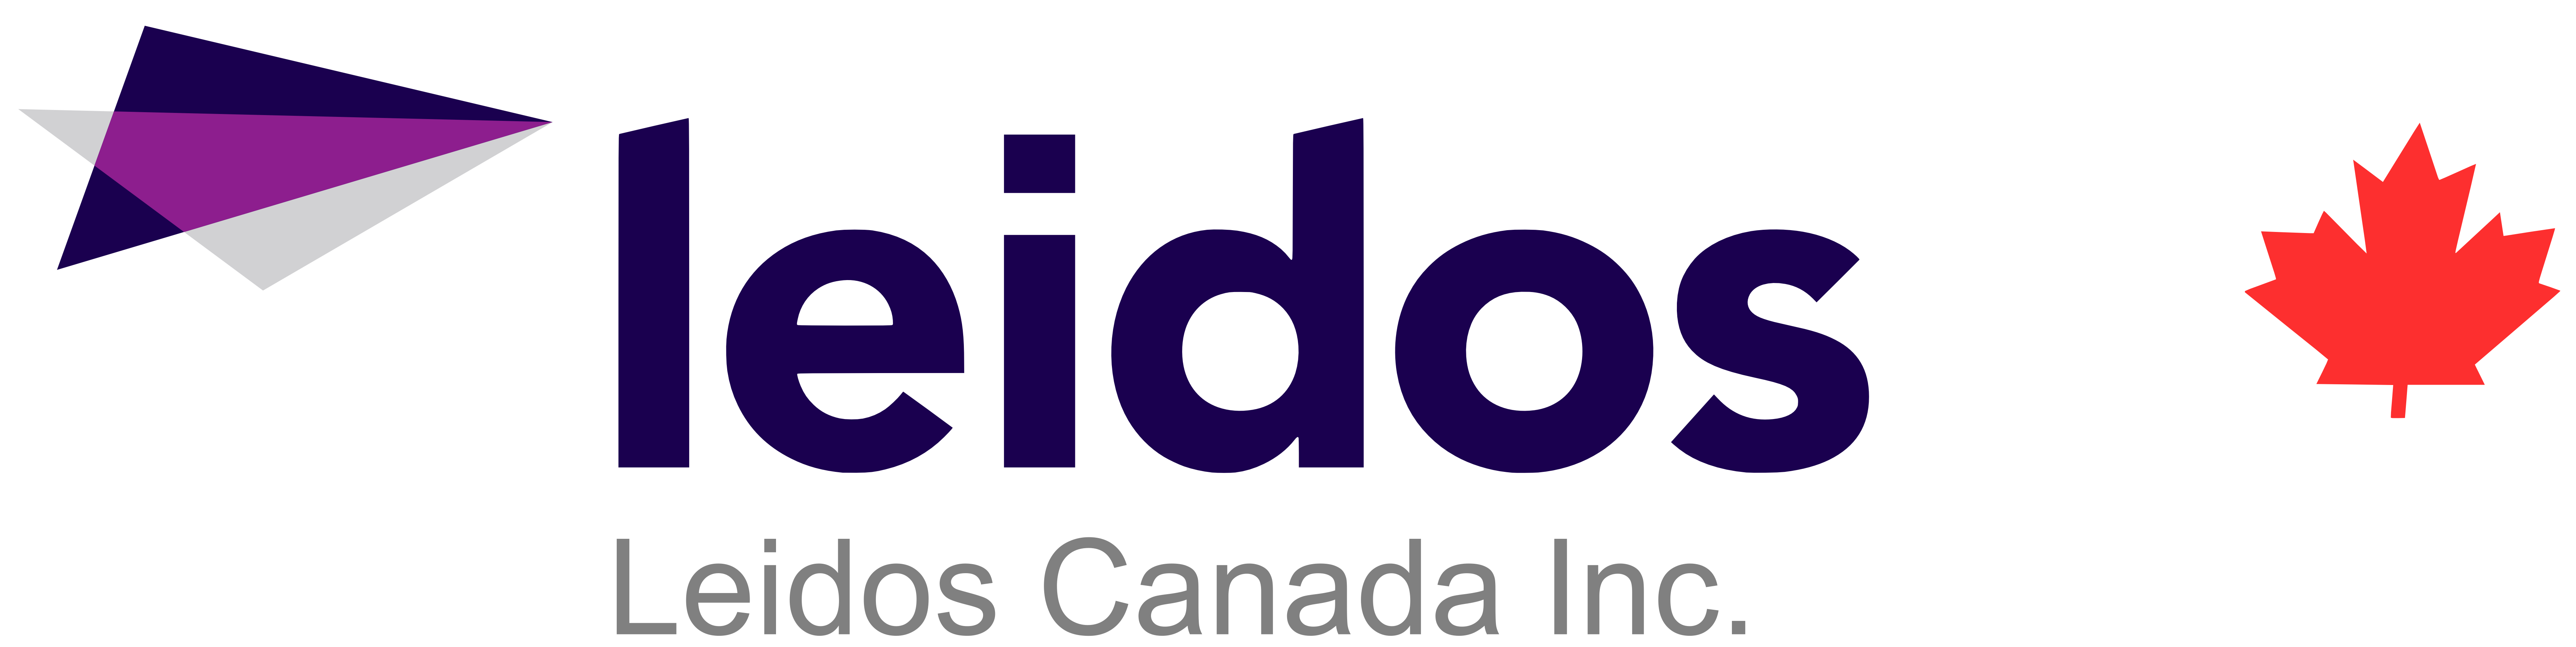 Leidos_Canada_Logo_WithName_SIGN